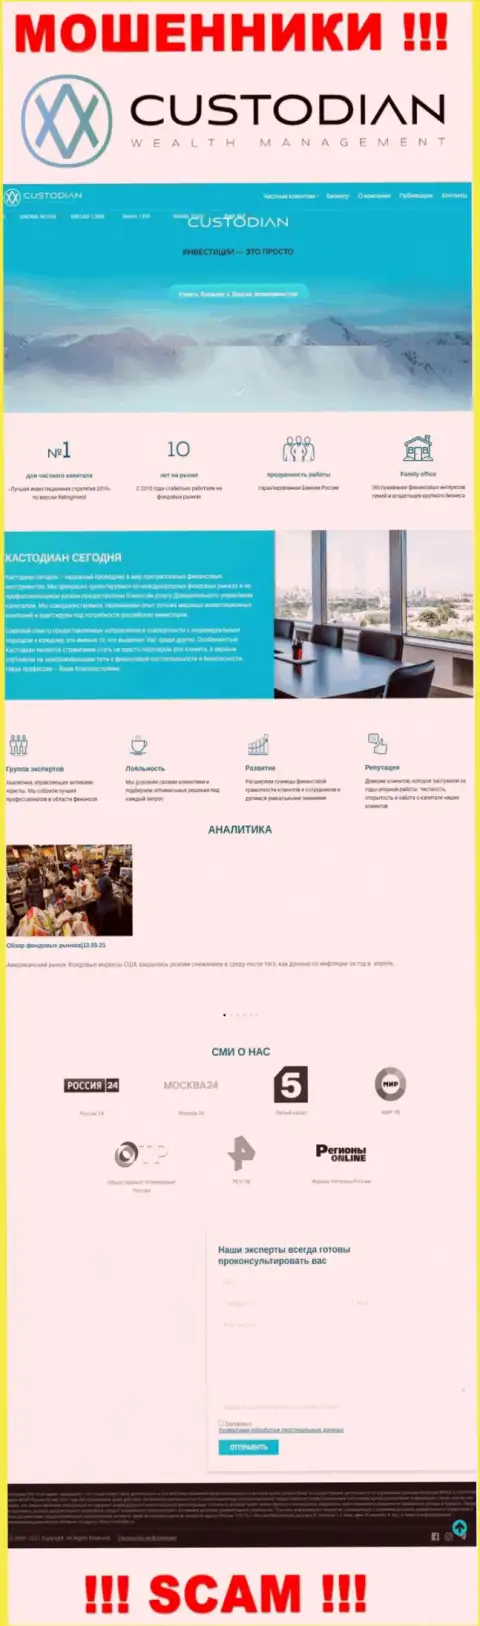 Скрин официального сайта незаконно действующей организации Кустодиан